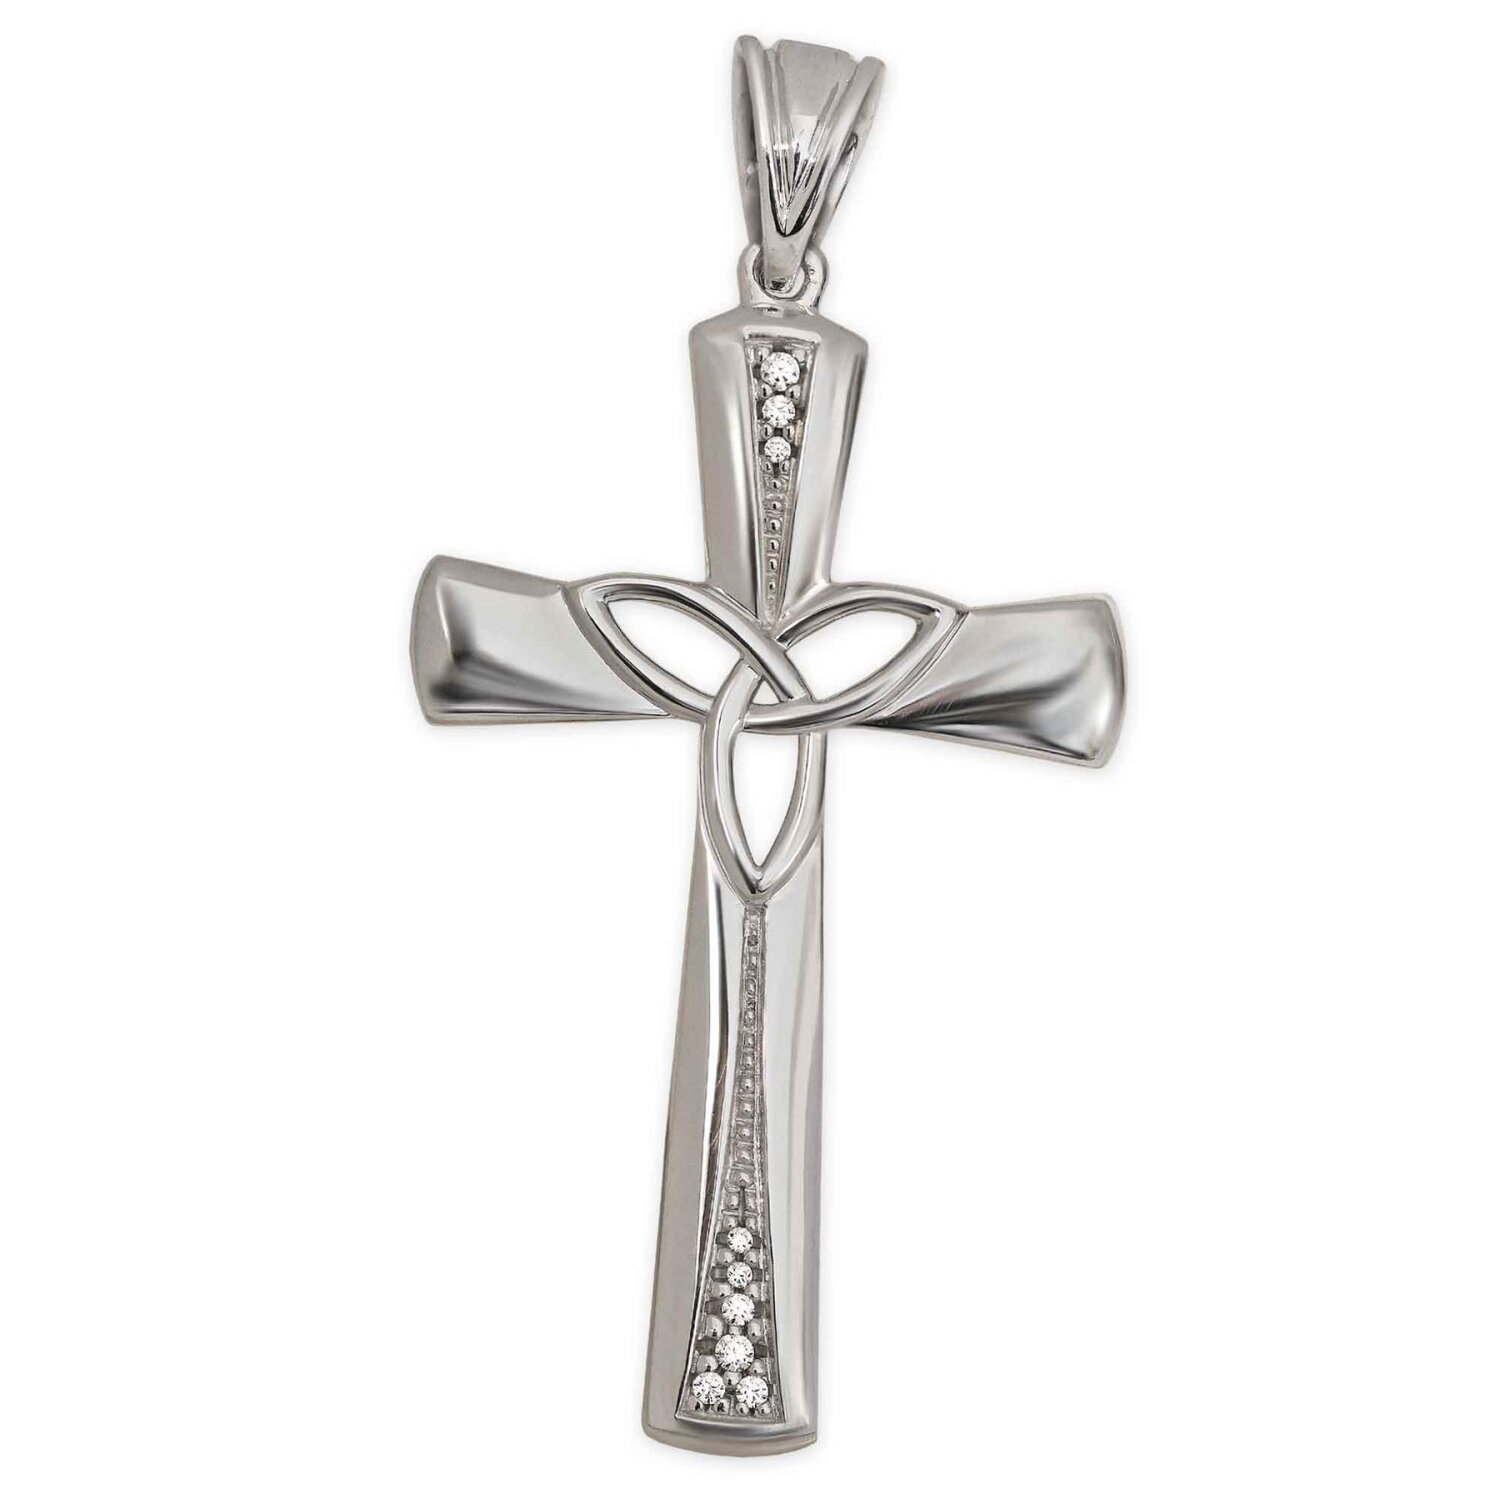 Großes Kreuz 43 mm mit Keltenknoten offen viele Zirkonias Echt Silber 925